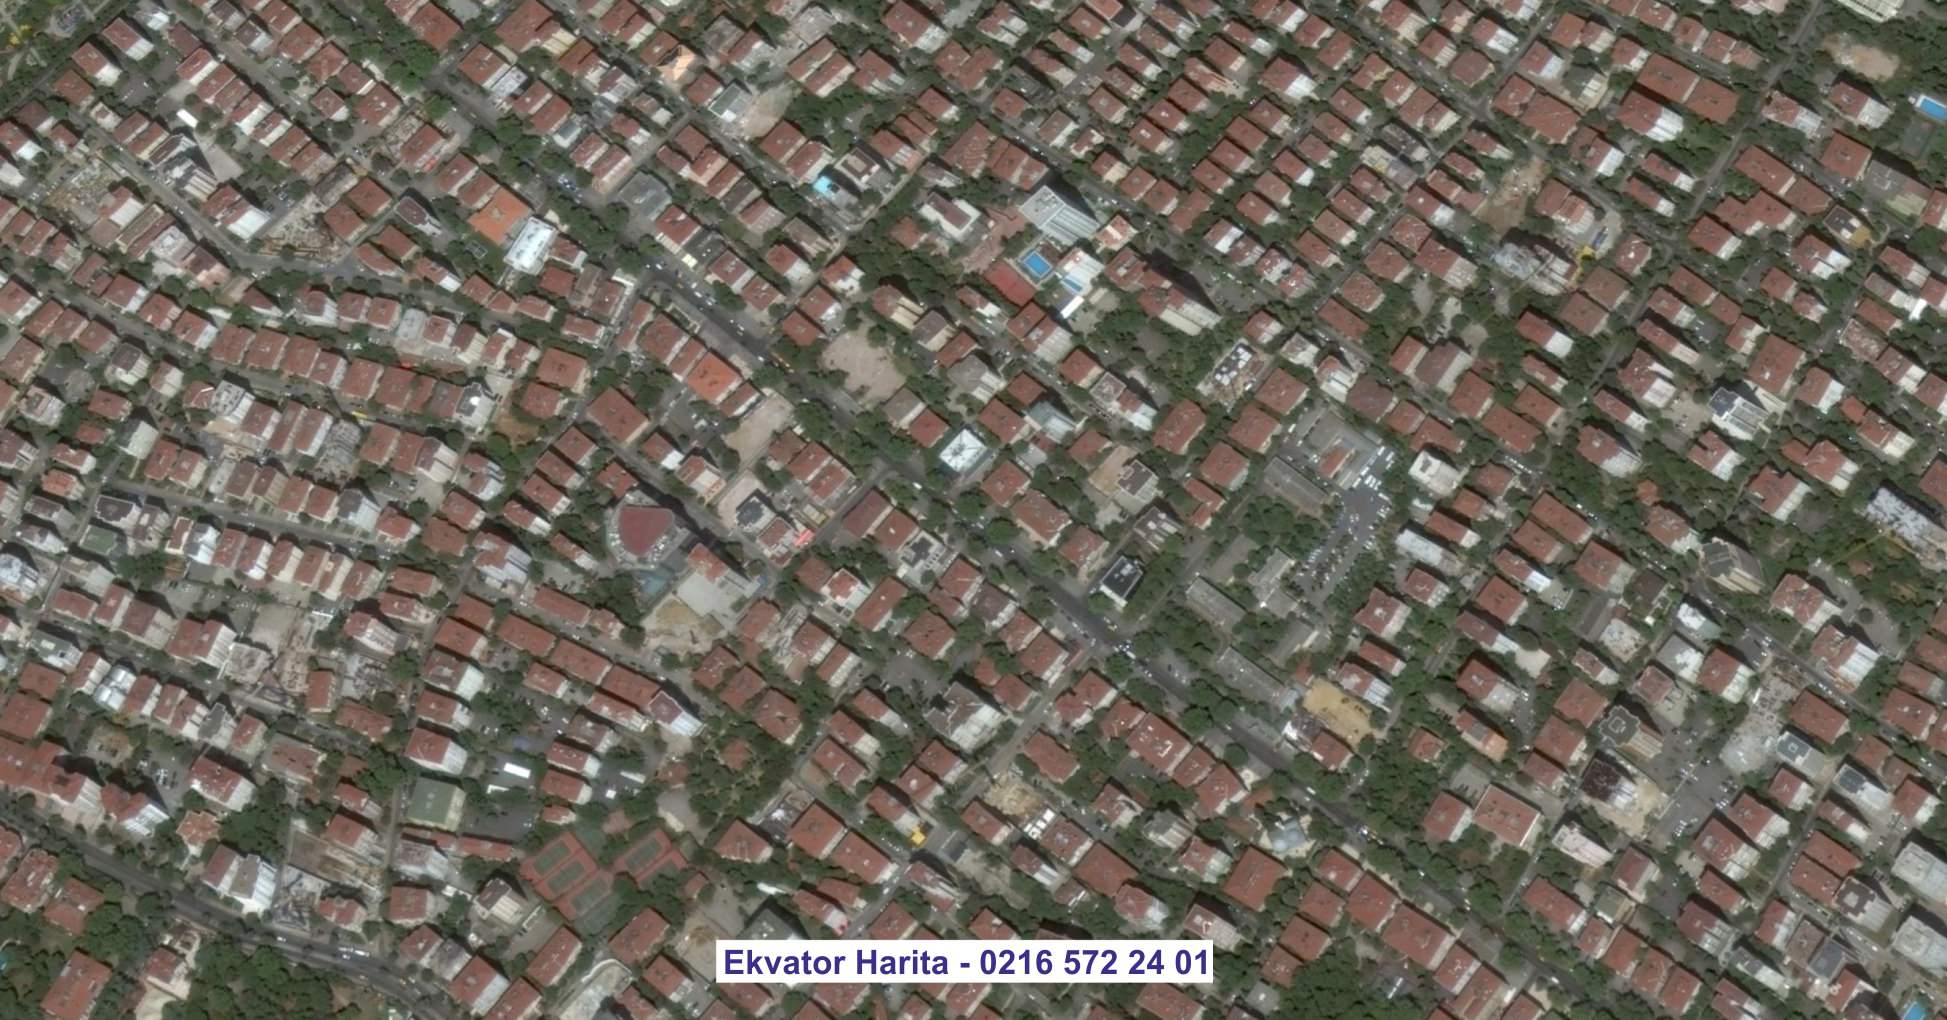 Çubuk Uydu Görüntüsü Örnek Fotoğrafı